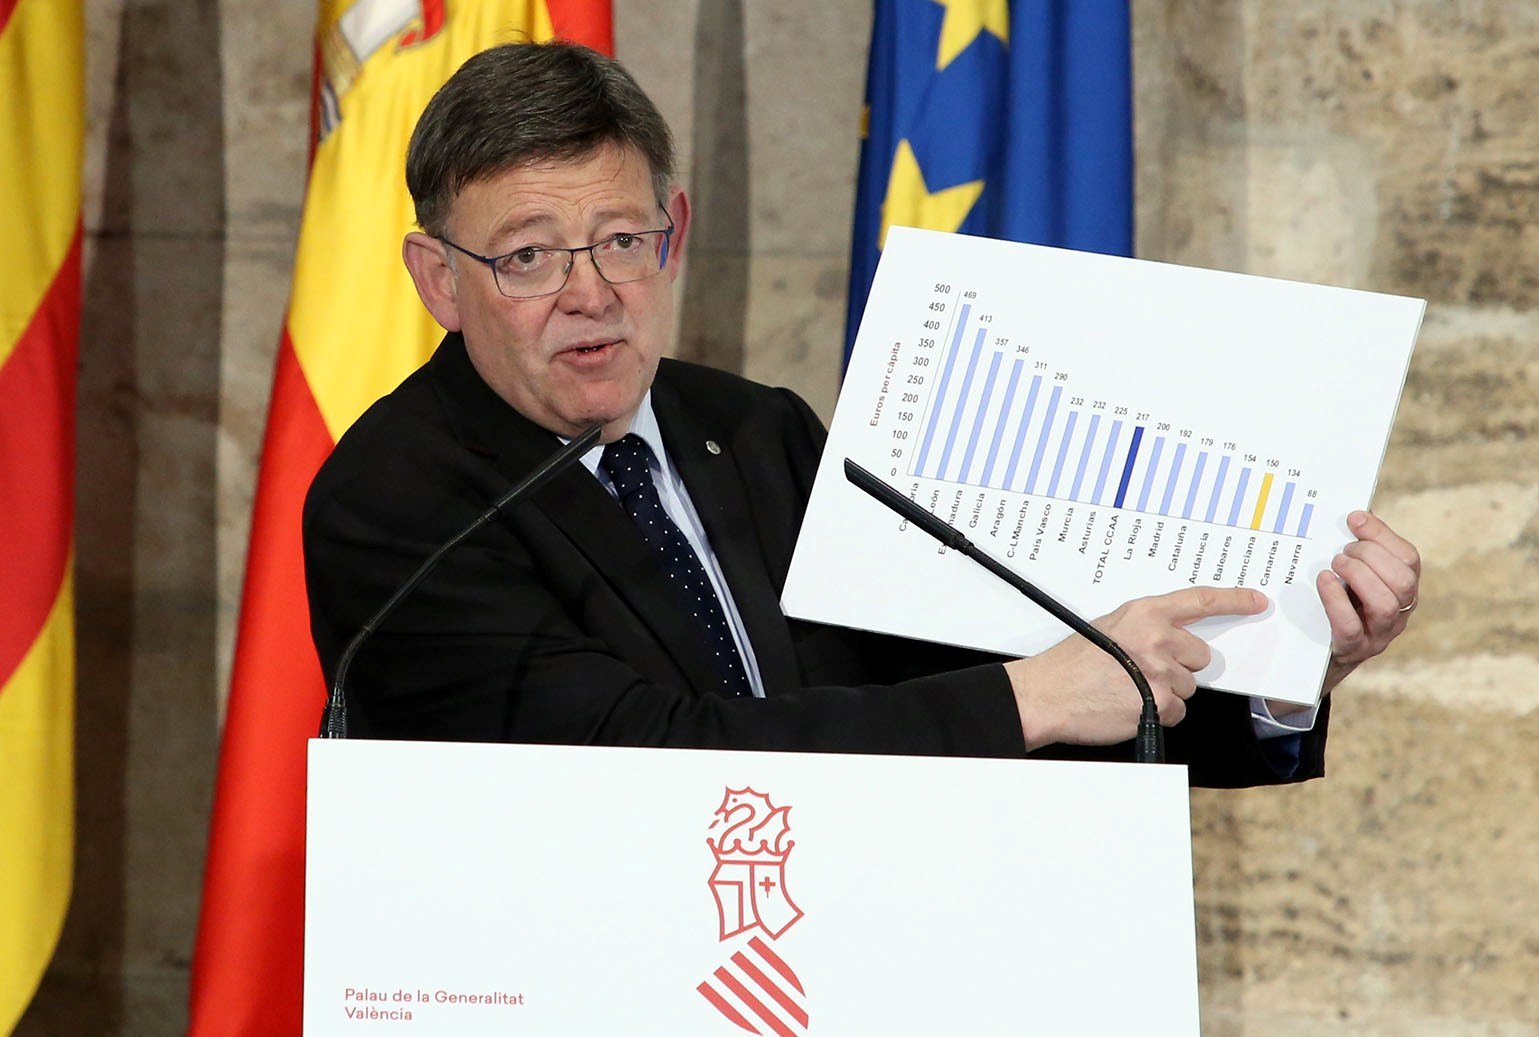 El Gobierno valenciano califica "de escándalo y arbitrarios" los presupuestos del Estado